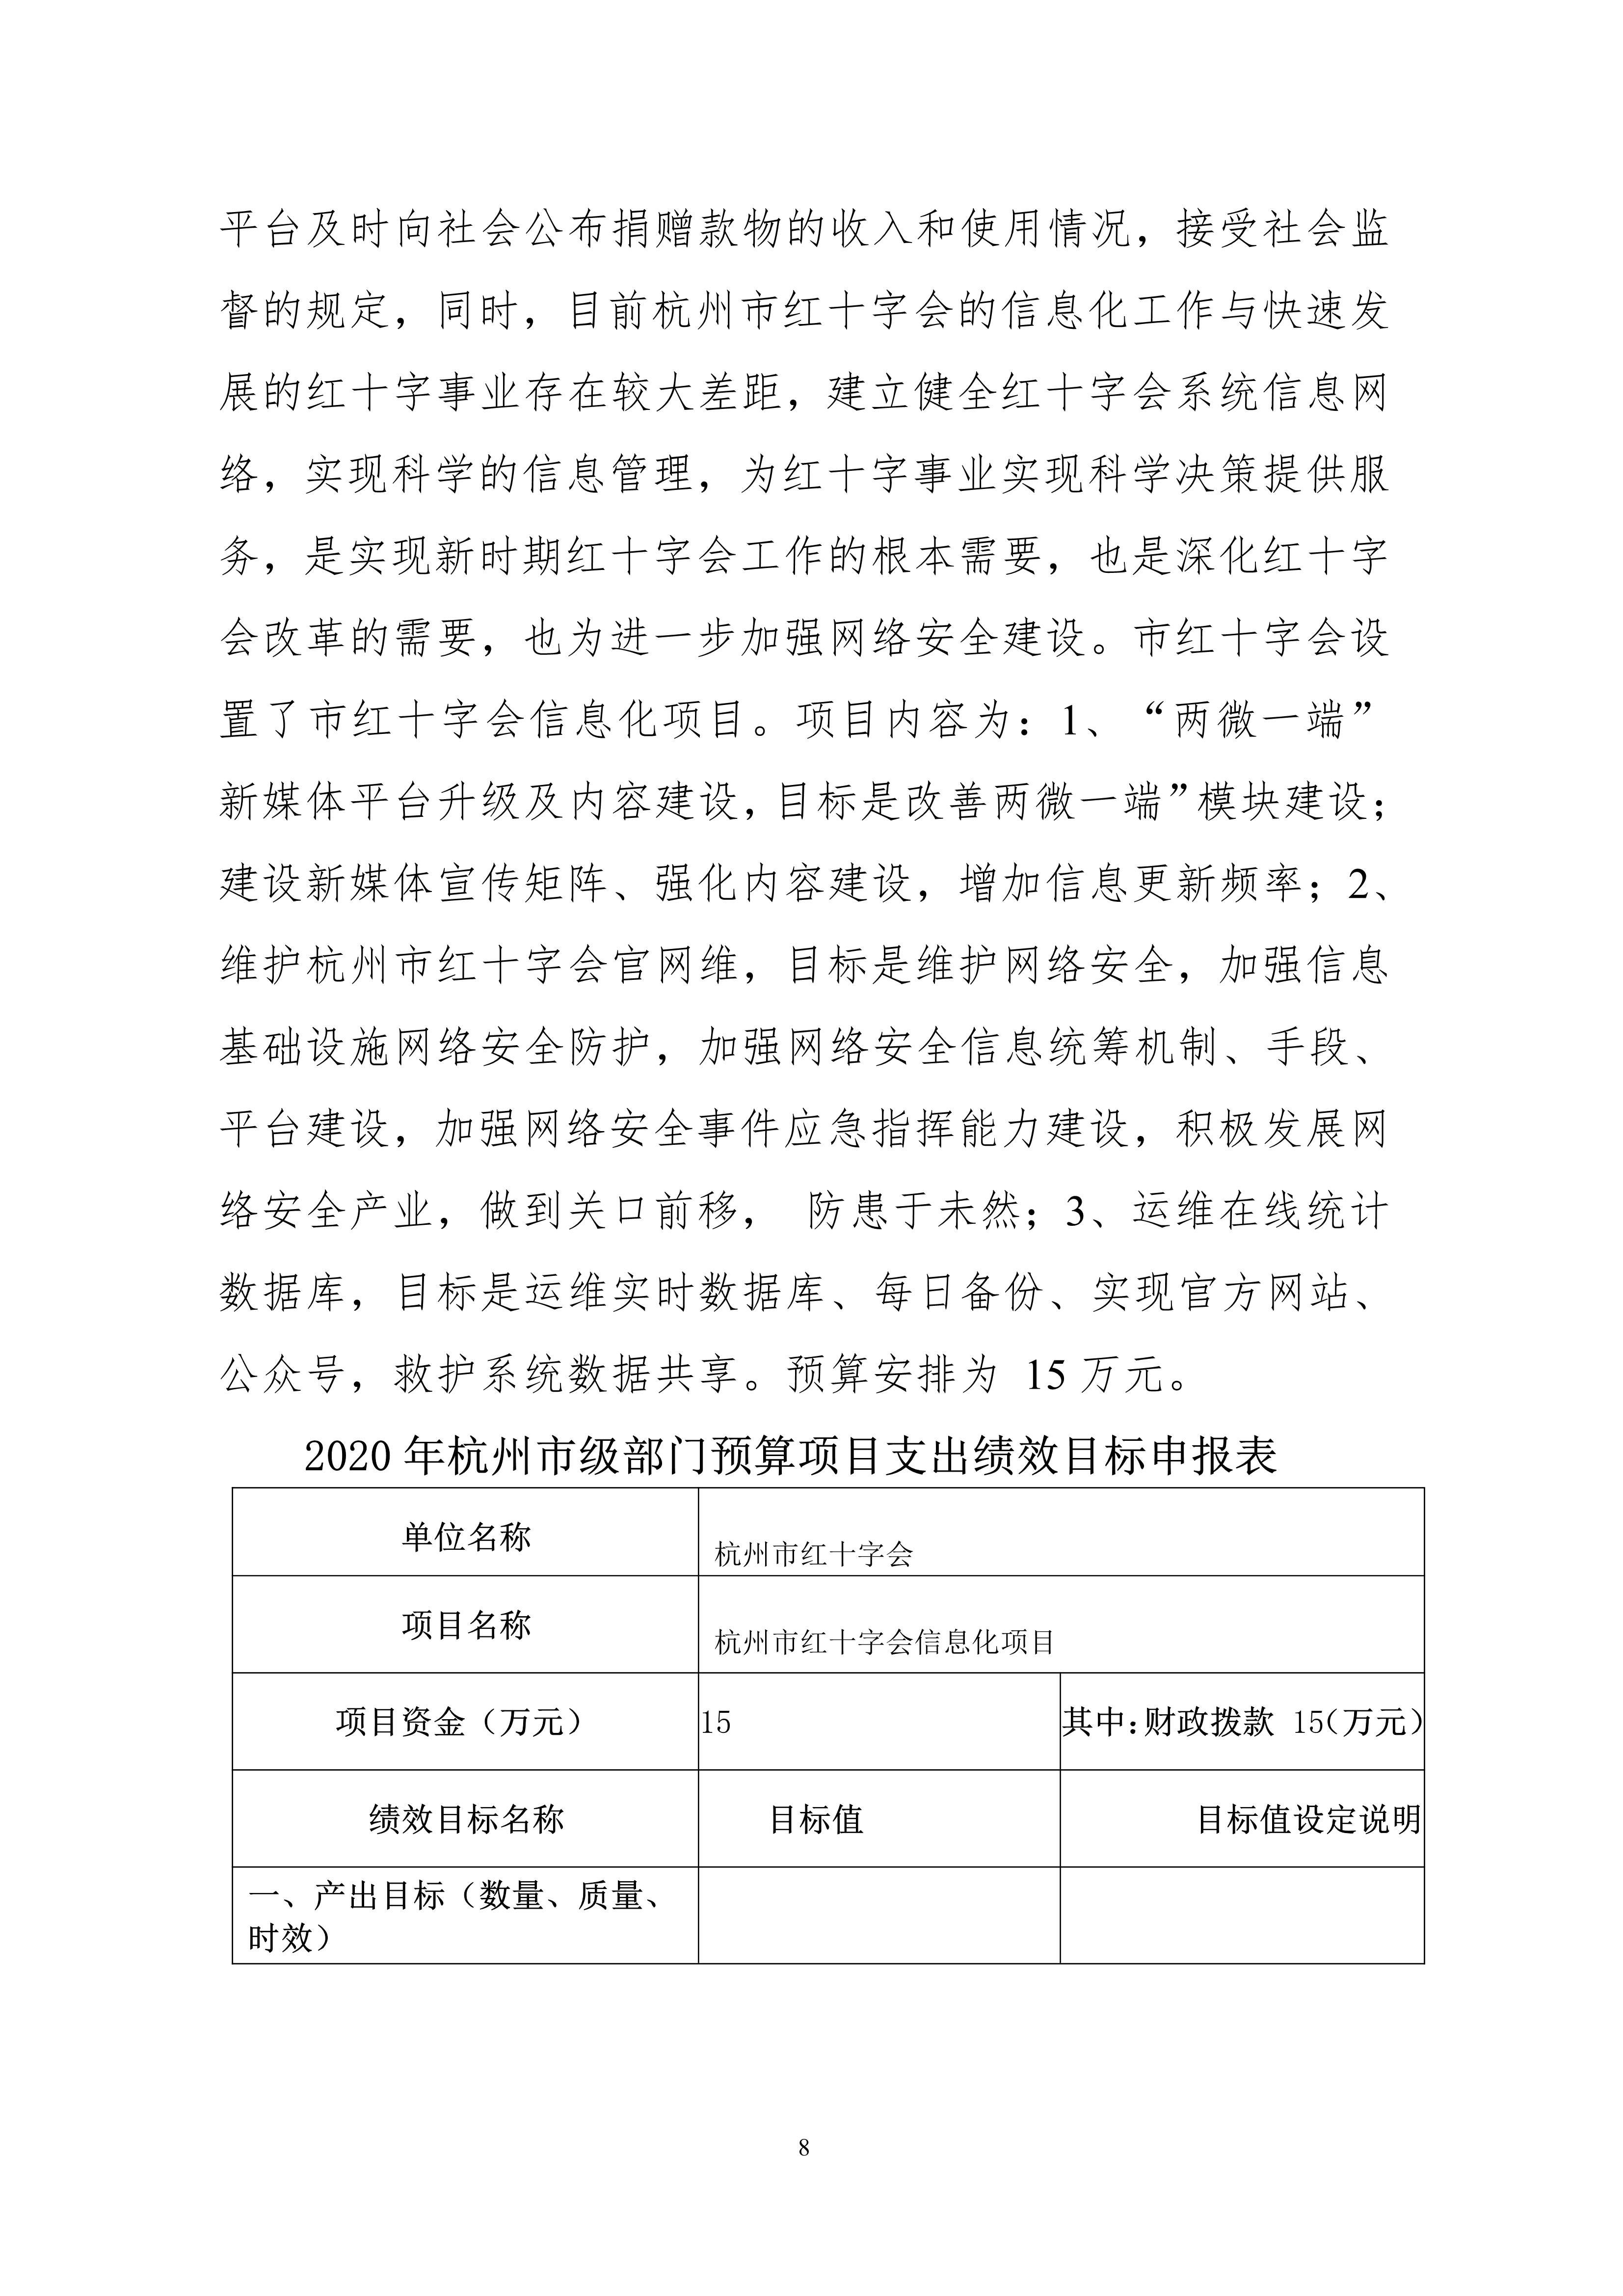 052010174206_0杭州市红十字会2020年部门预算_8.jpg